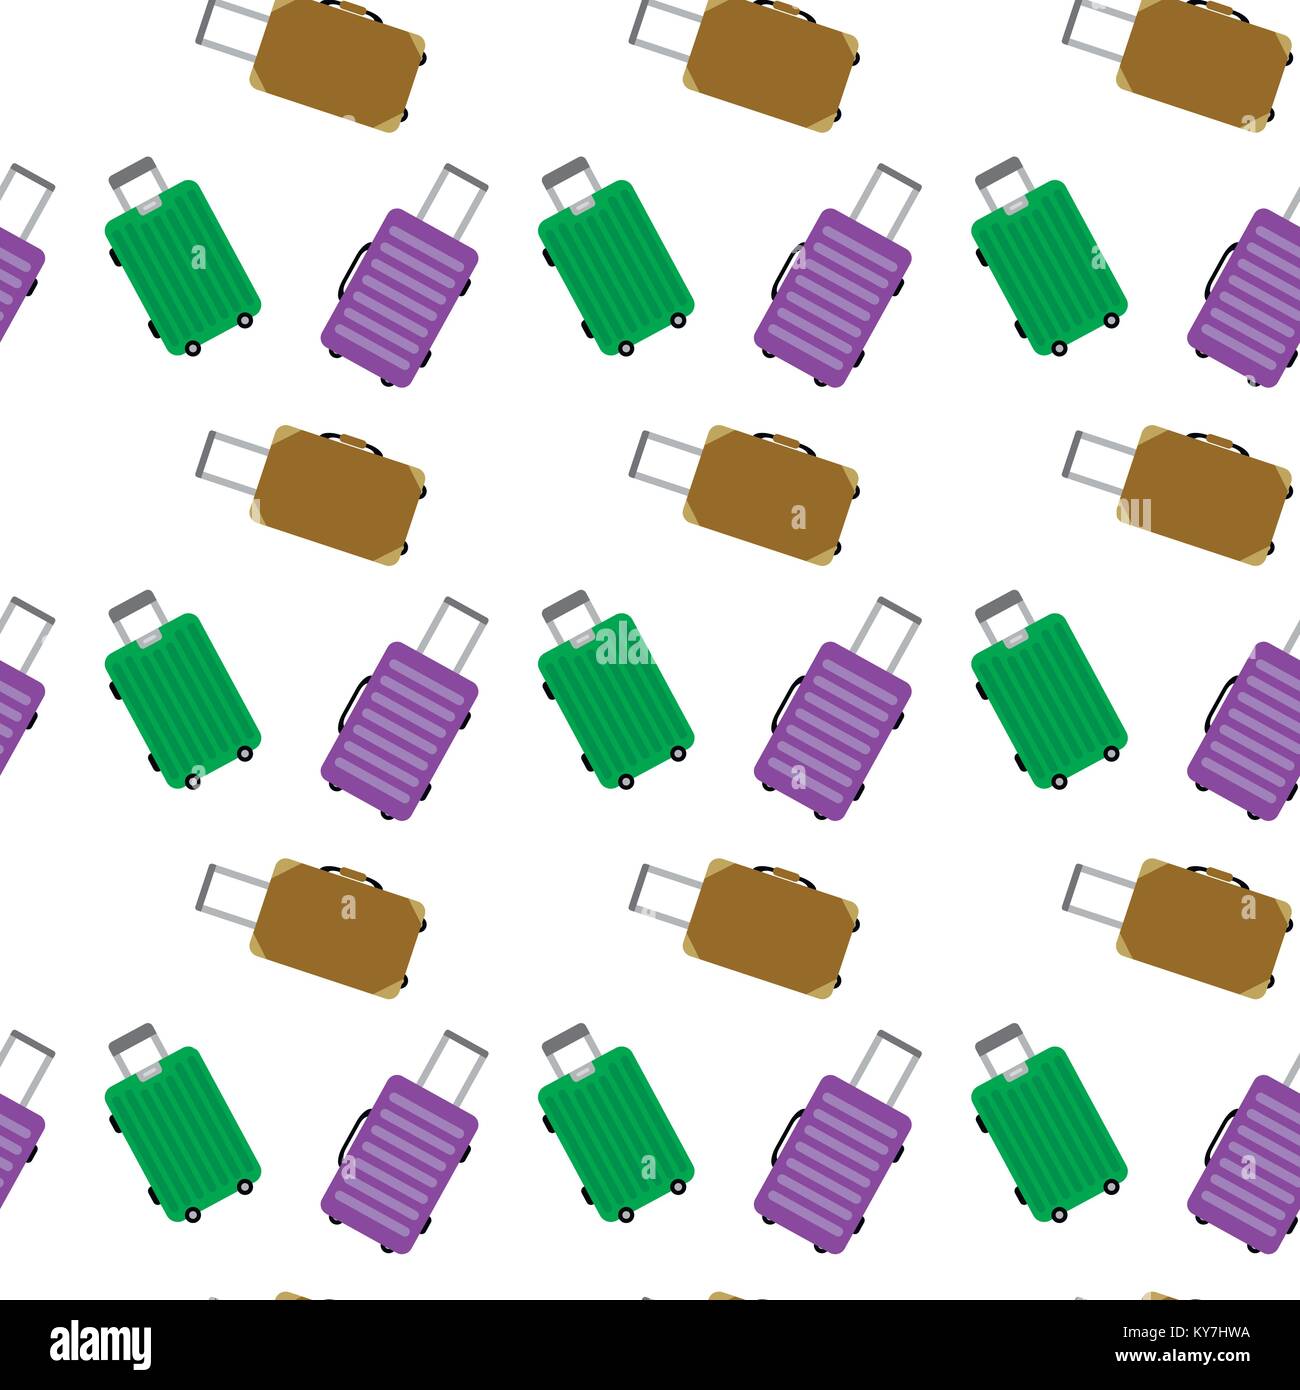 Gepäck Das Gepäck für die Reise und Tourismus Muster Nahtlose. Tasche für die Fahrt- und Reisekosten Muster. Vector Illustration Stock Vektor